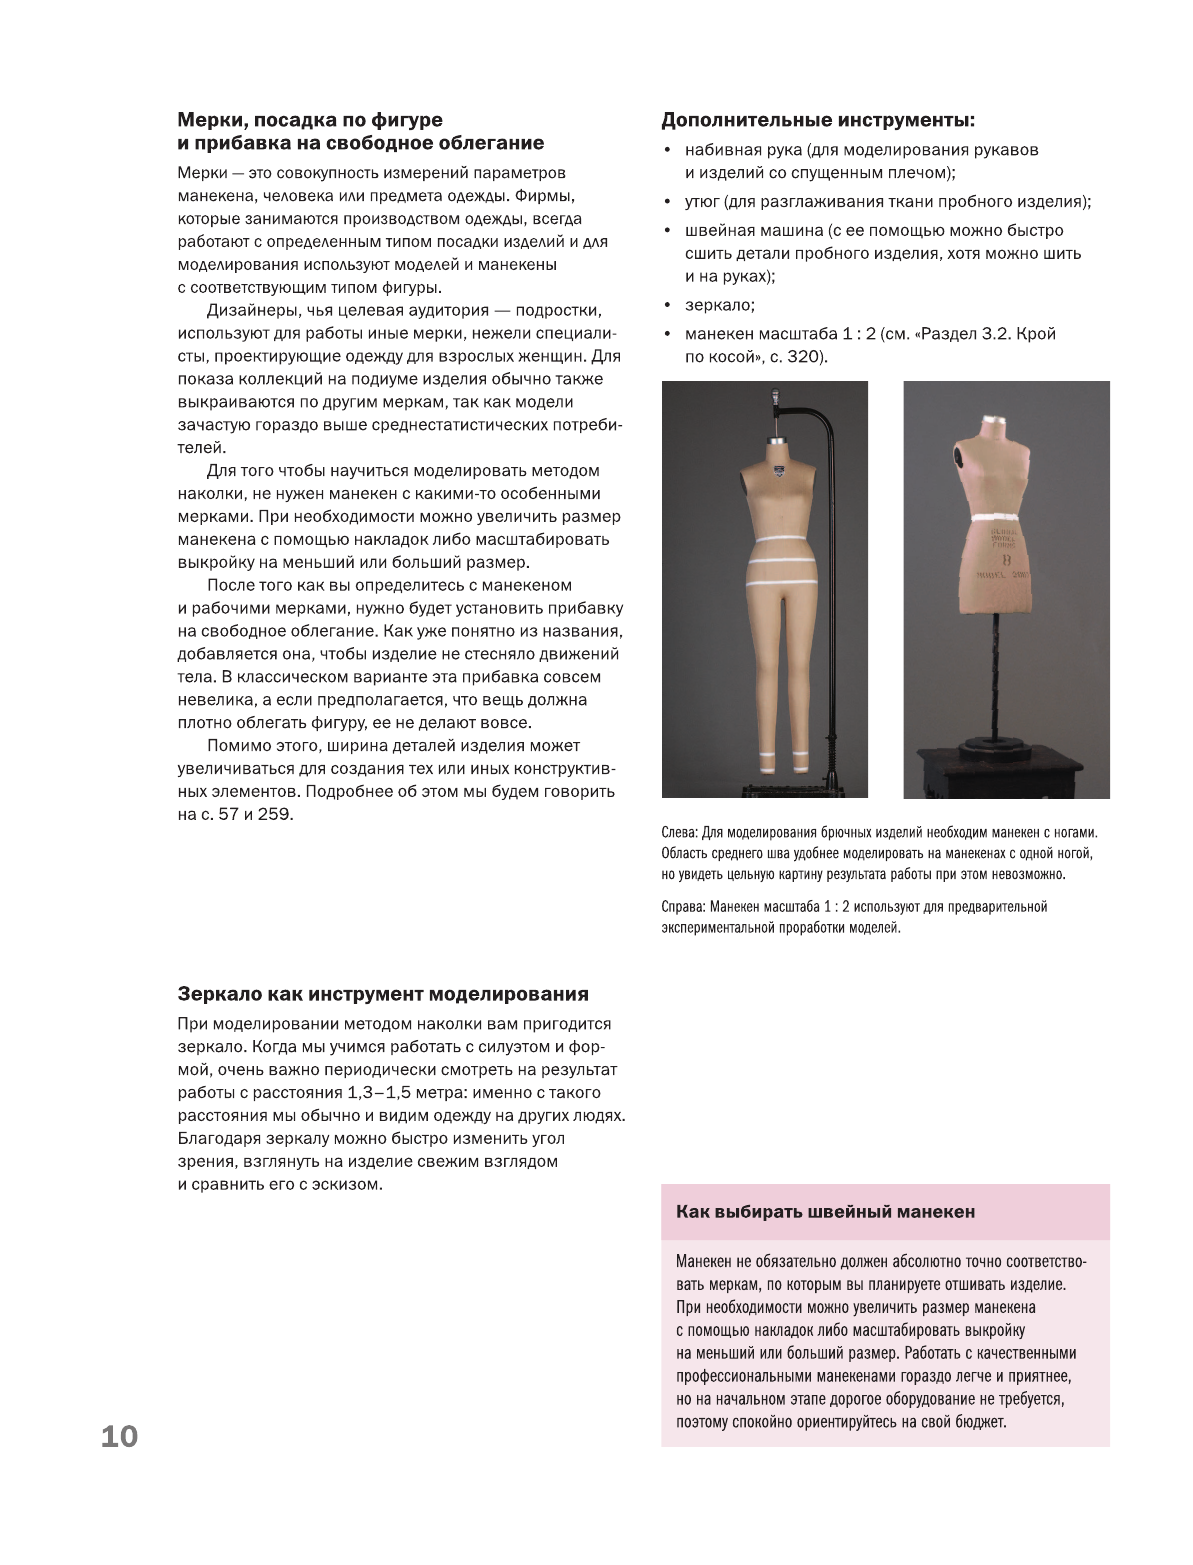 Моделирование одежды: полный иллюстрированный курс. Второе издание - фото №10